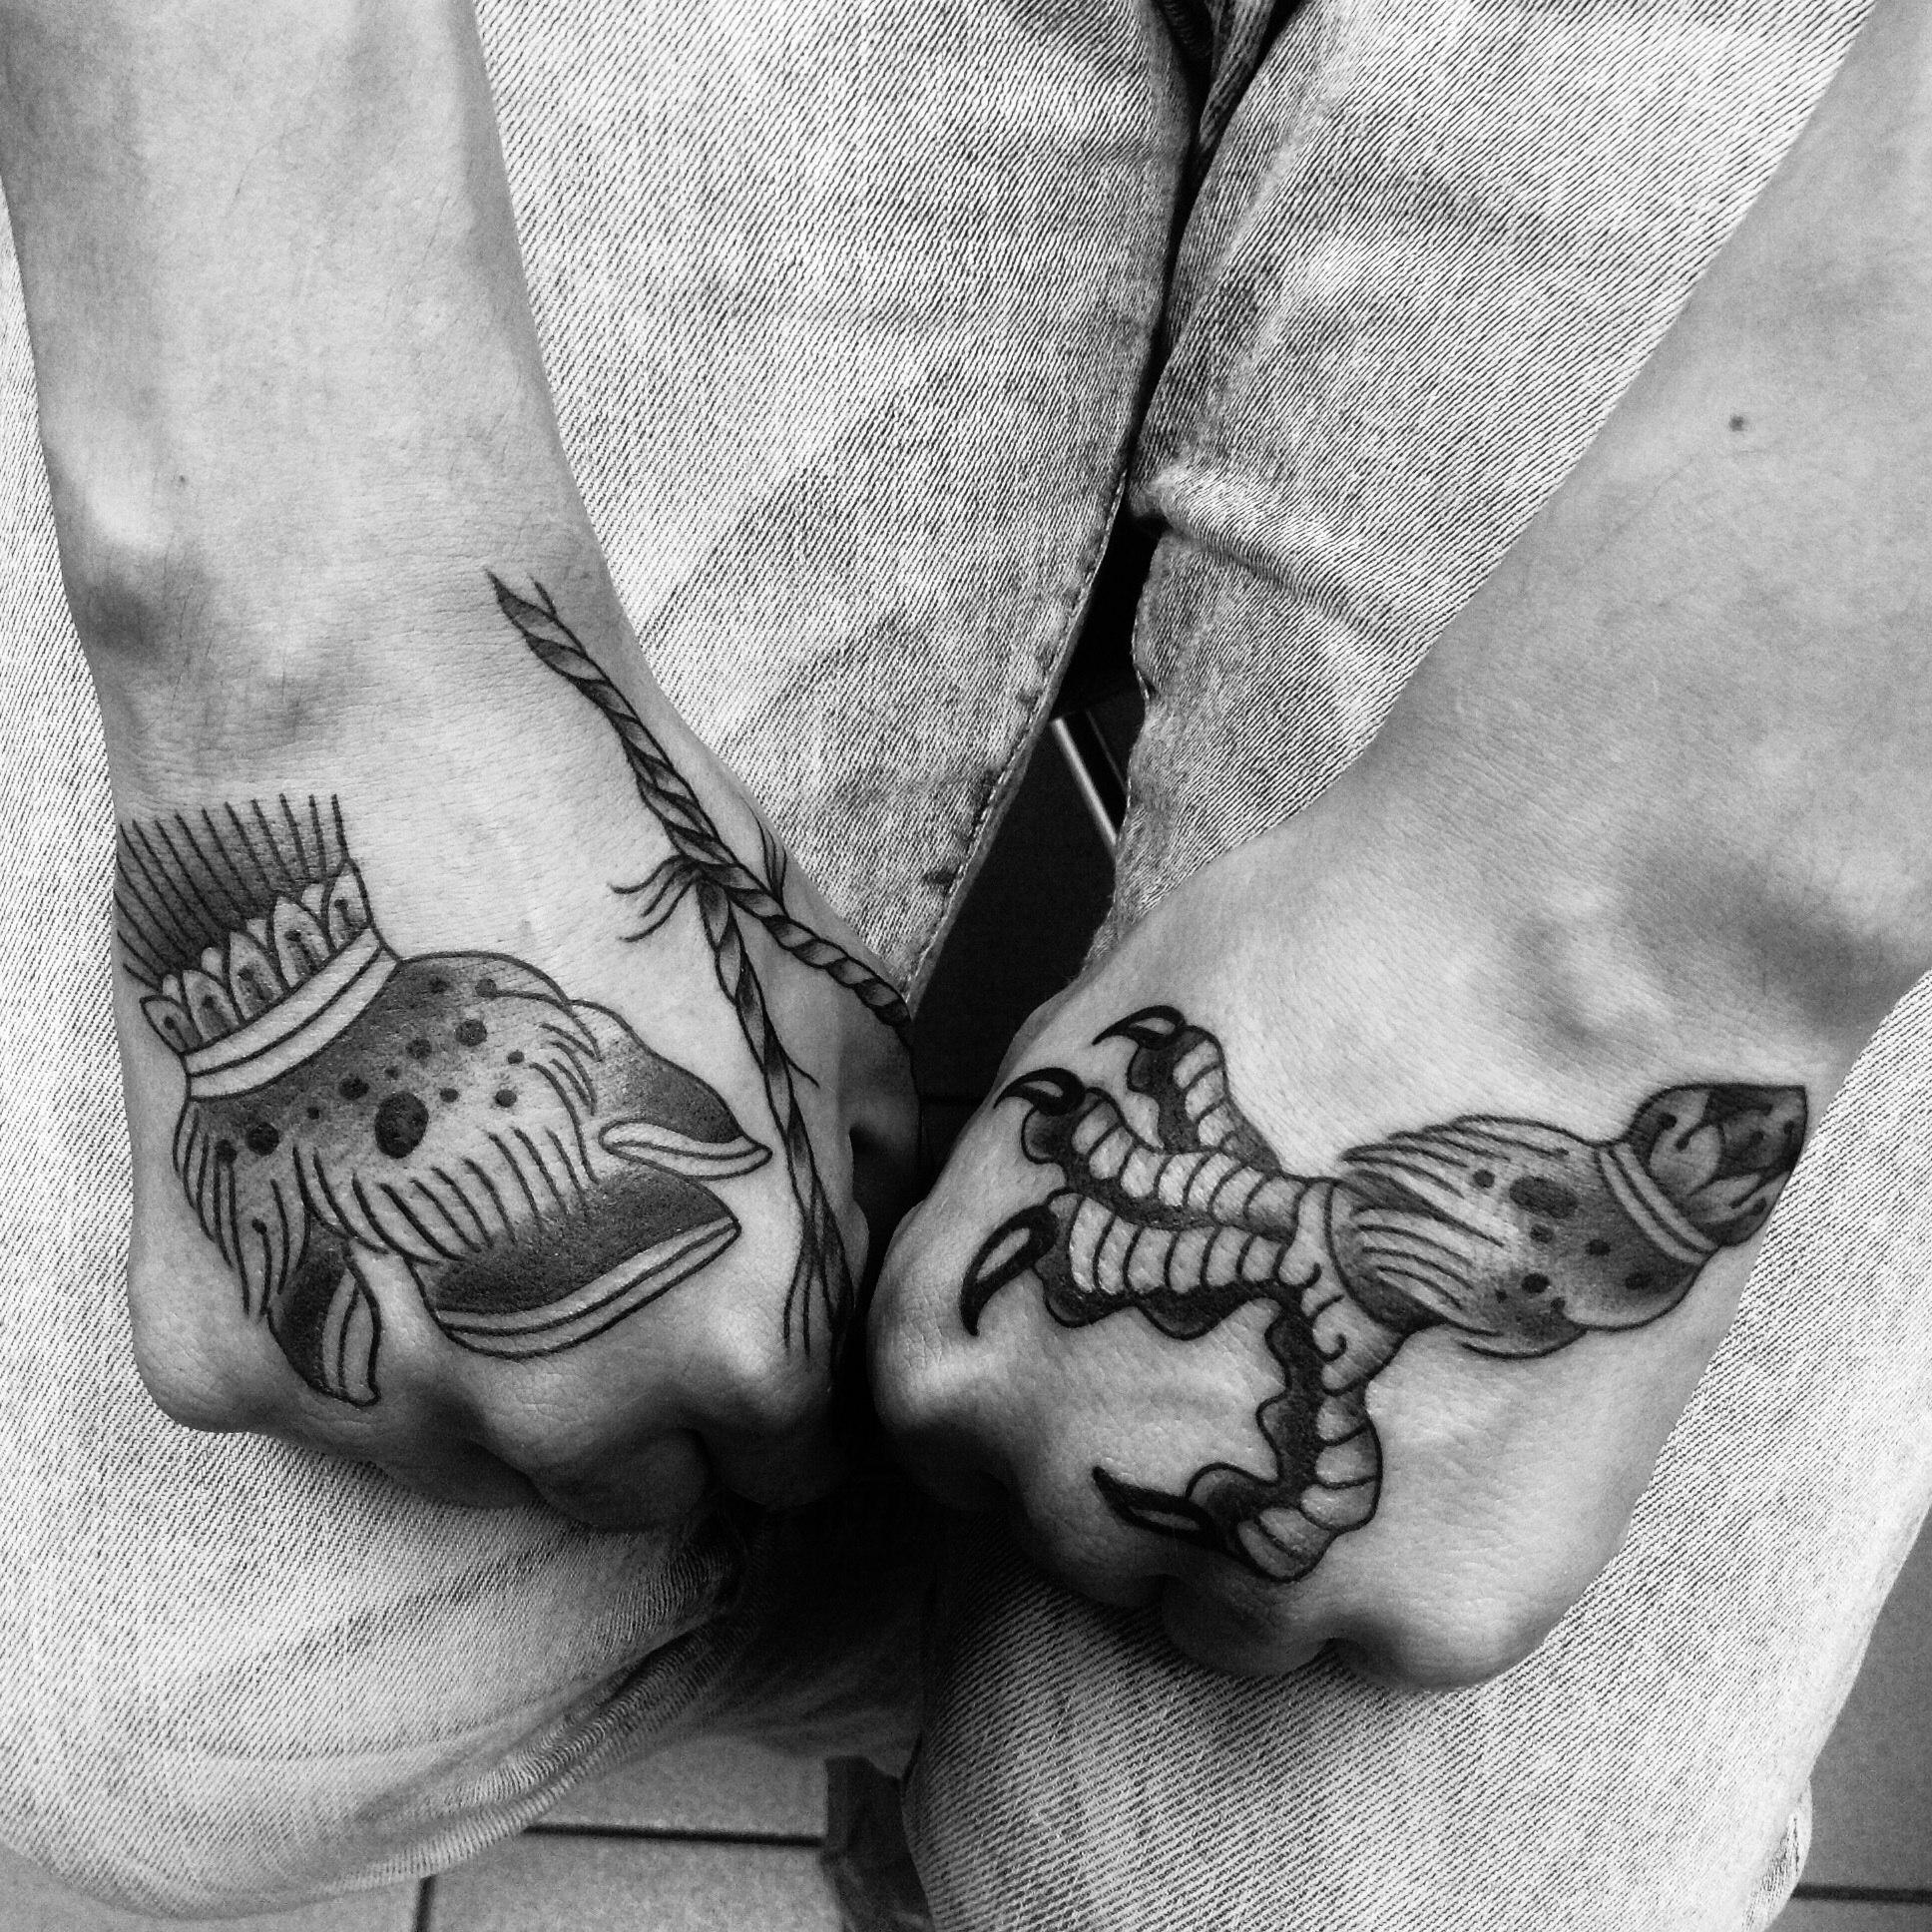 Художественные татуировки-миниатюры от Тани Lika Борецкой. "Петля, копыто и куриная лапа".